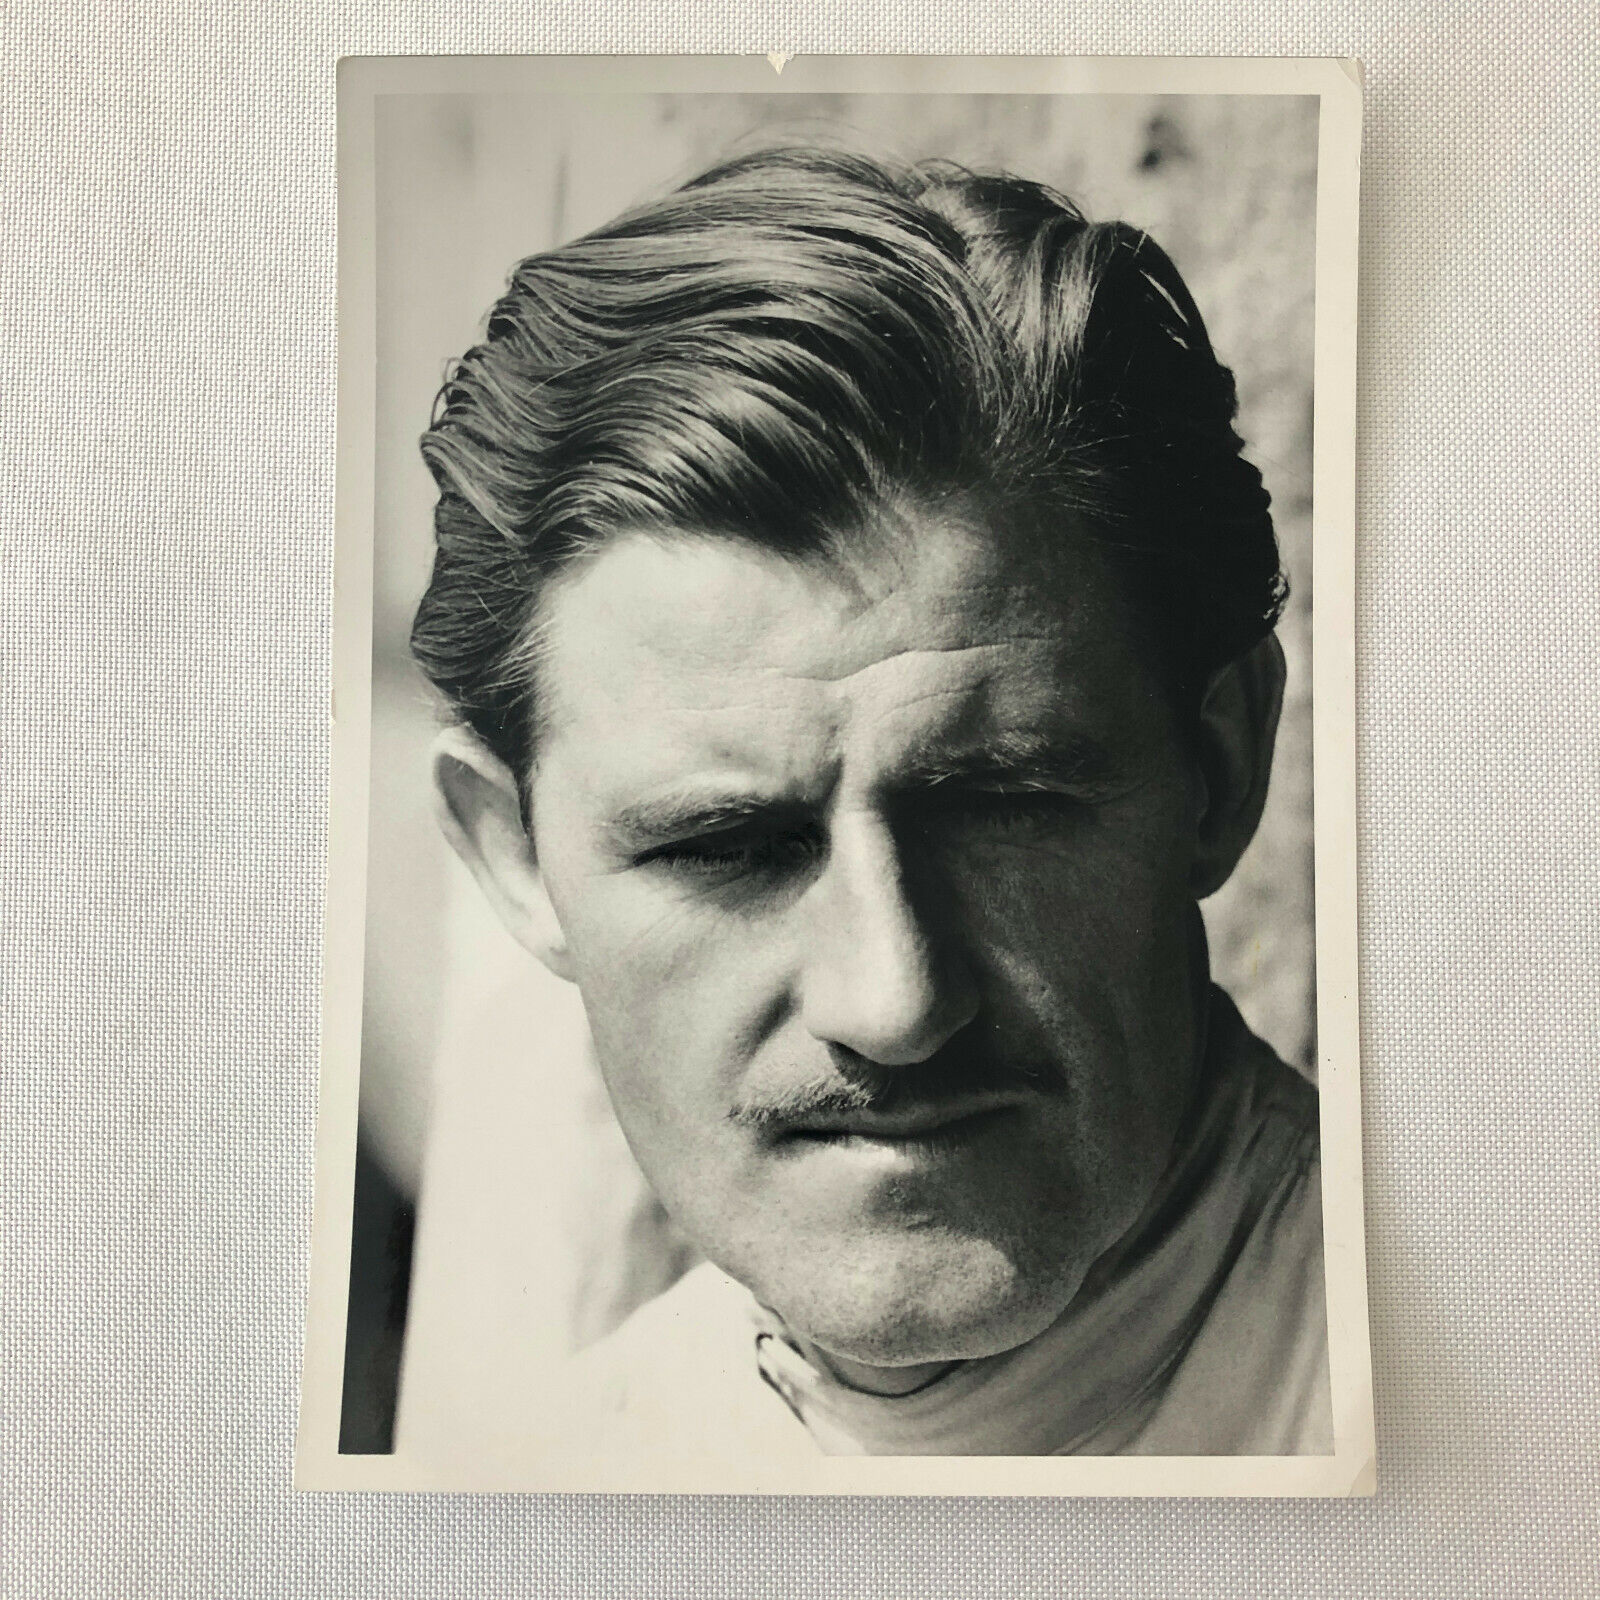 Vintage Graham Hill Racing Driver Portrait Press Photo Photograph 